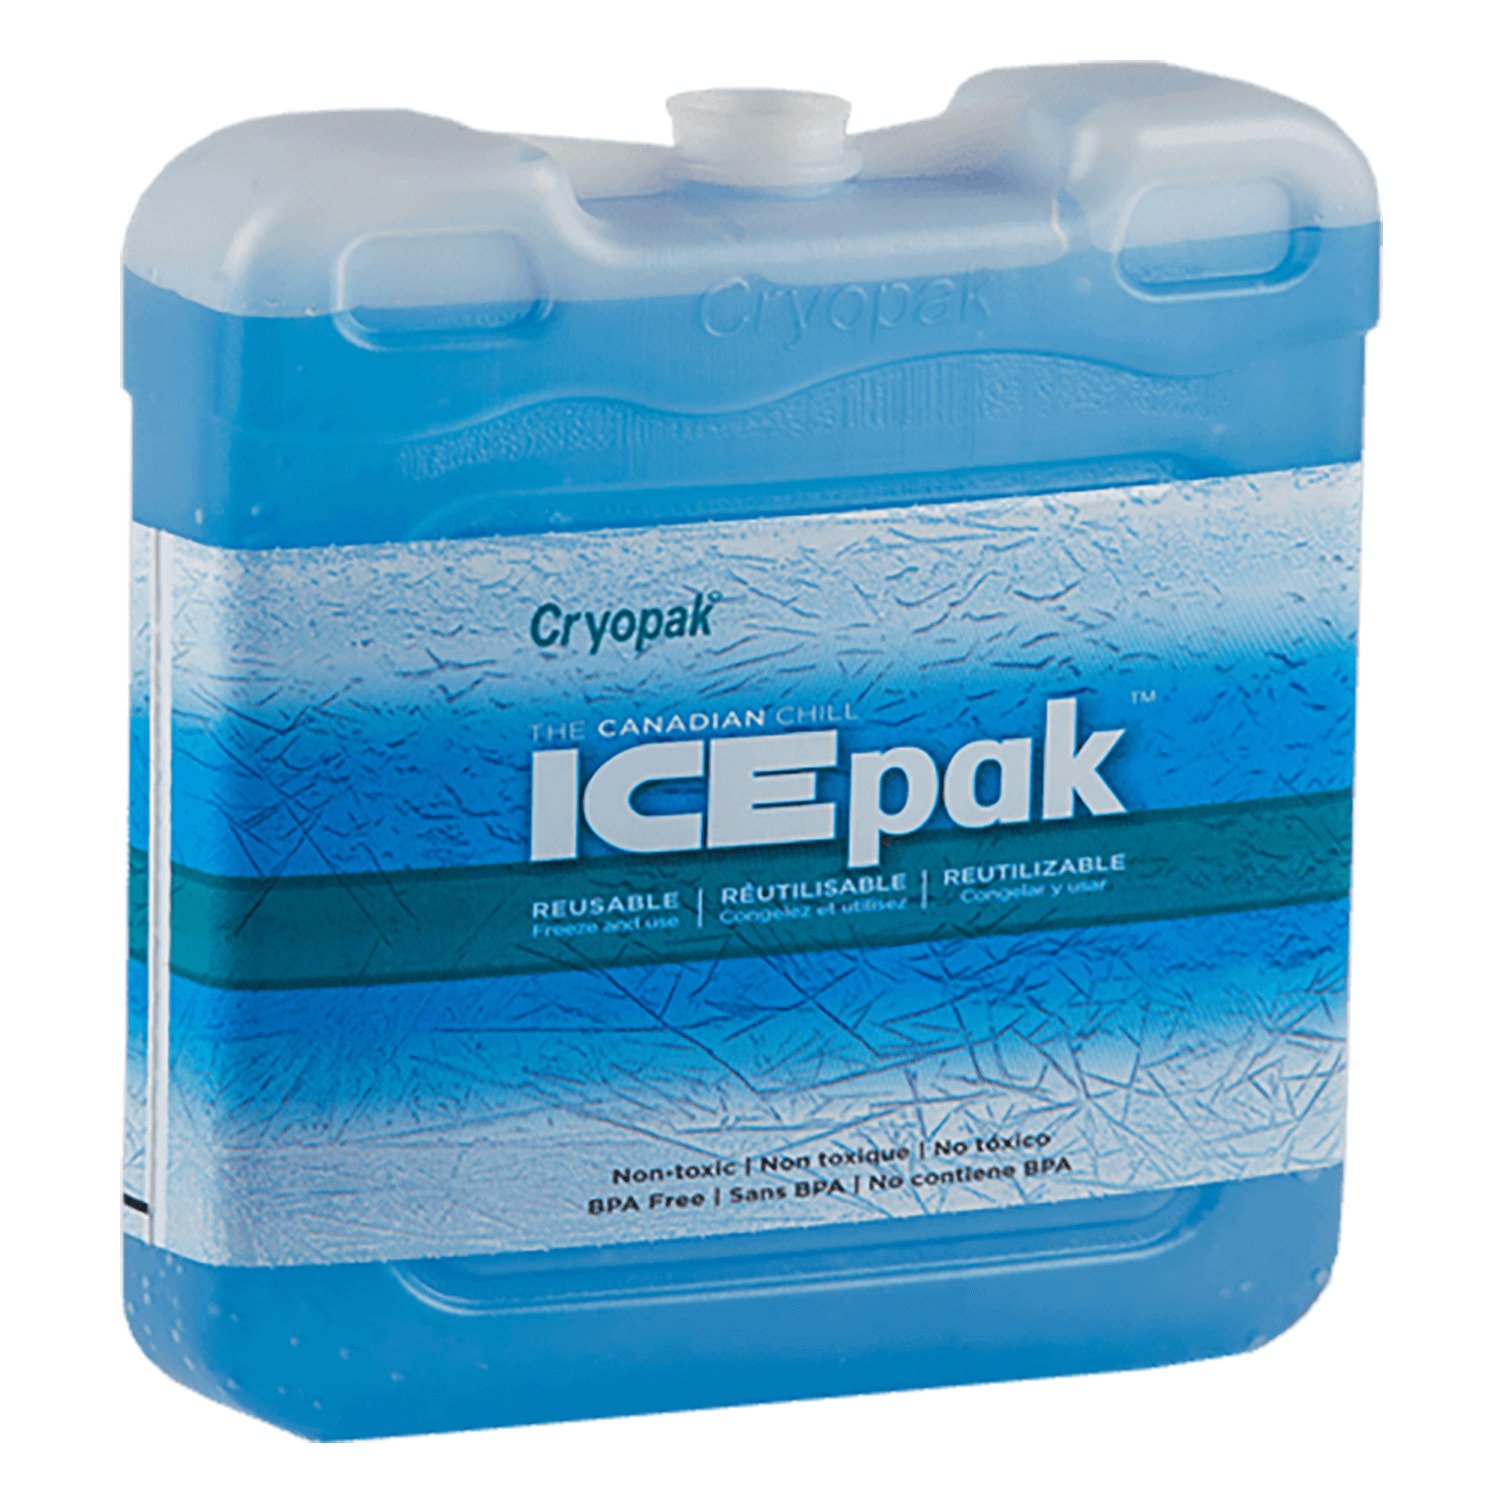 Cryopak - Ice-Pak rigide et réutilisable - Très grand, 4 lb